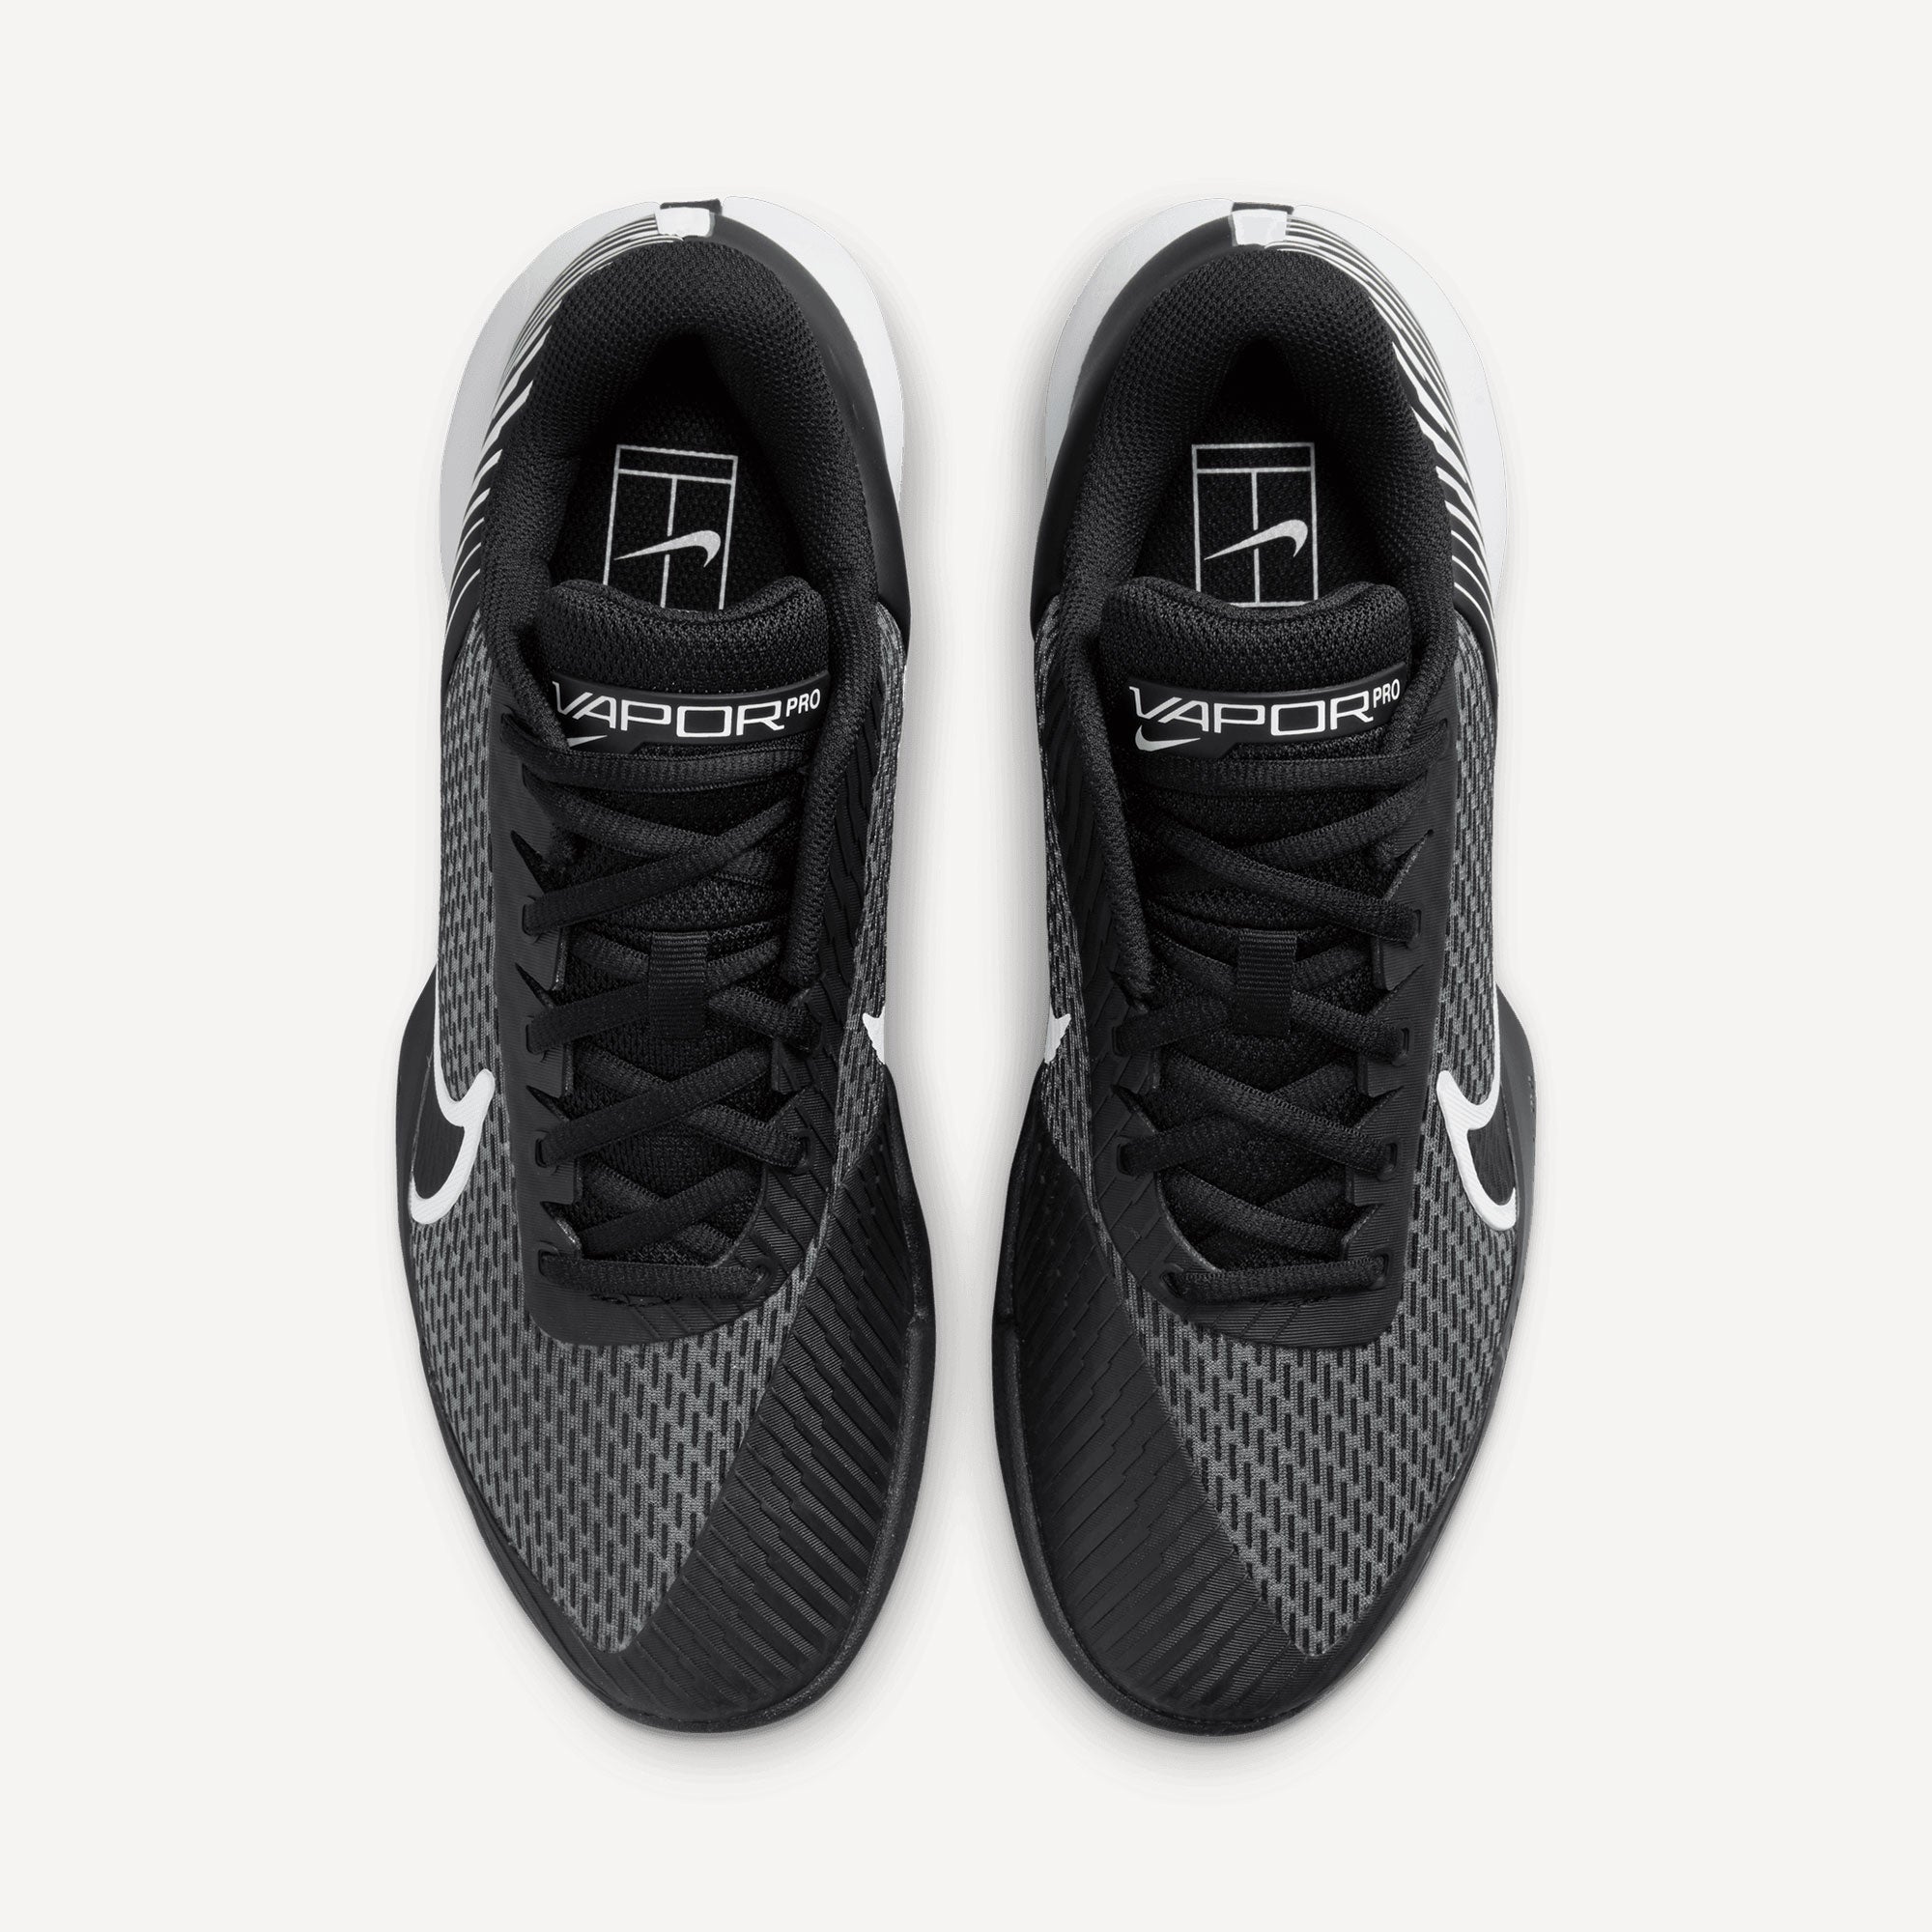 NikeCourt Air Zoom Vapor Pro 2 Men's Hard Court Tennis Shoes Black (6)